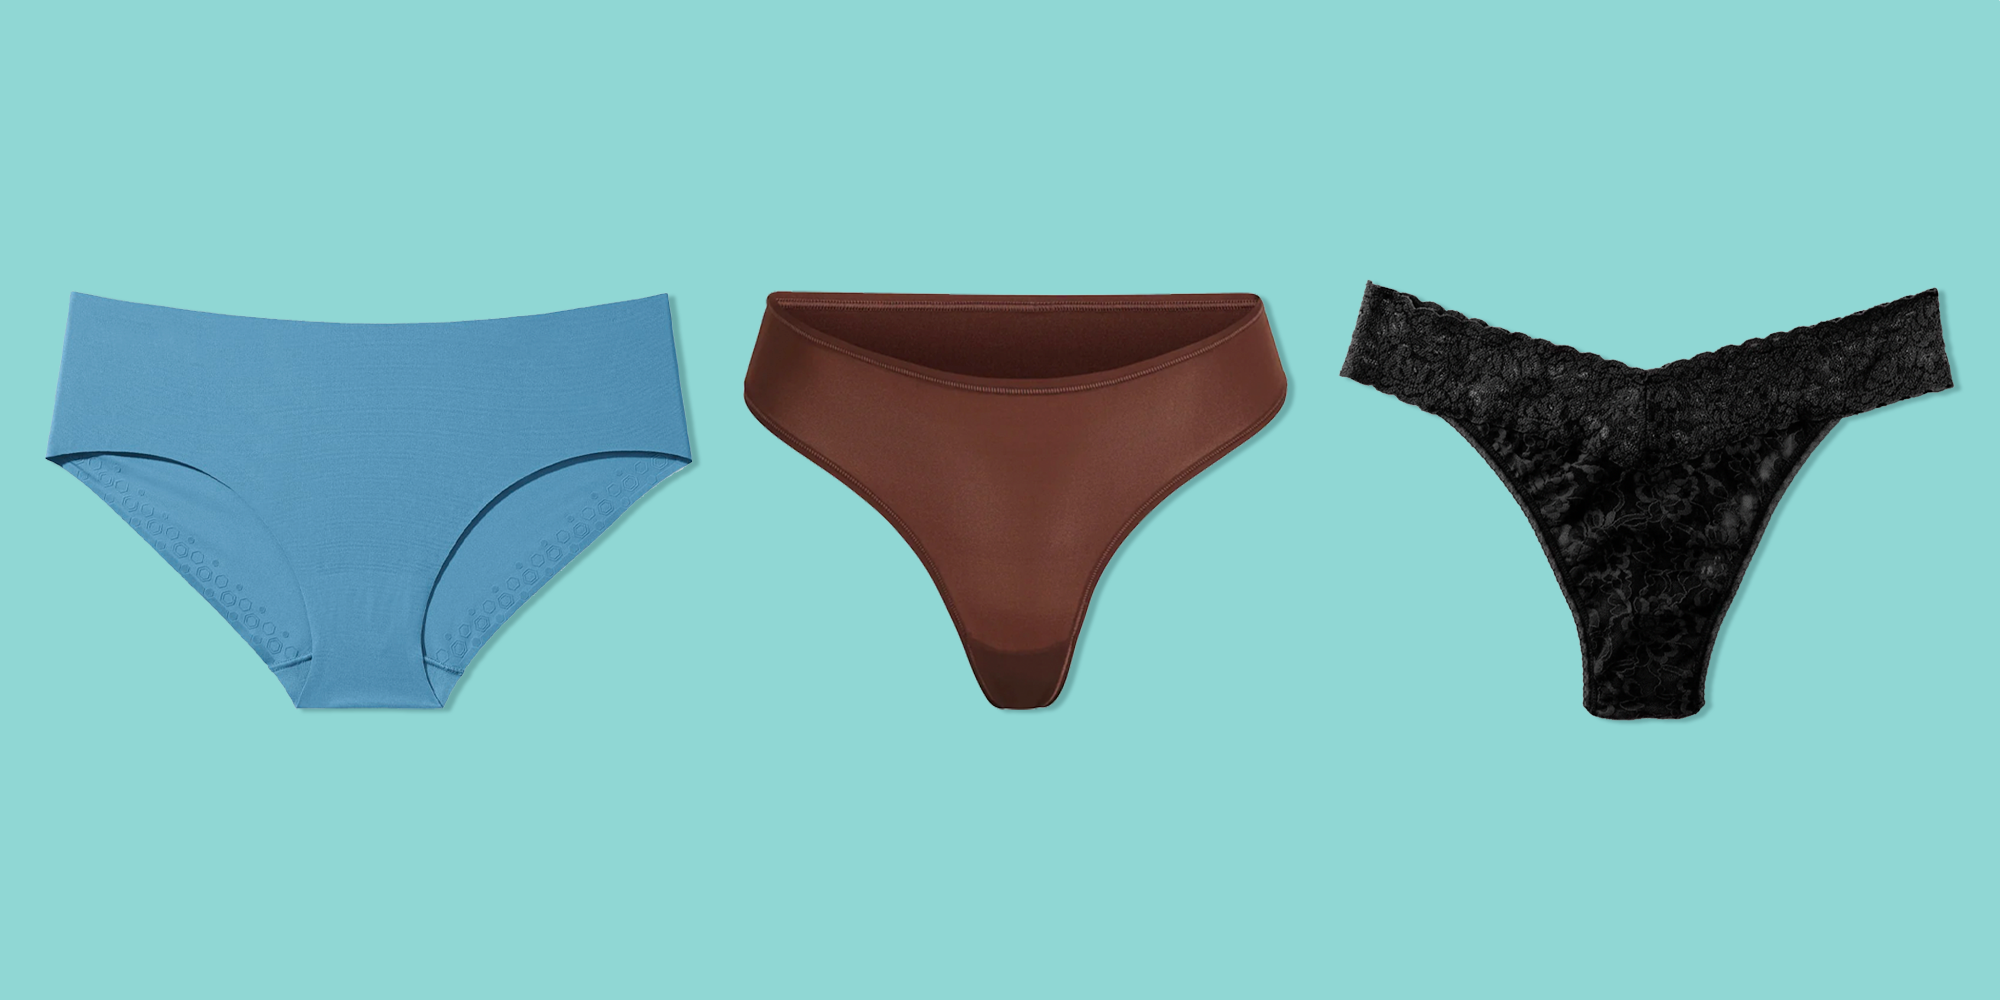 Double Wear Underwear Sexy T Pants Flirting Underwear for Women